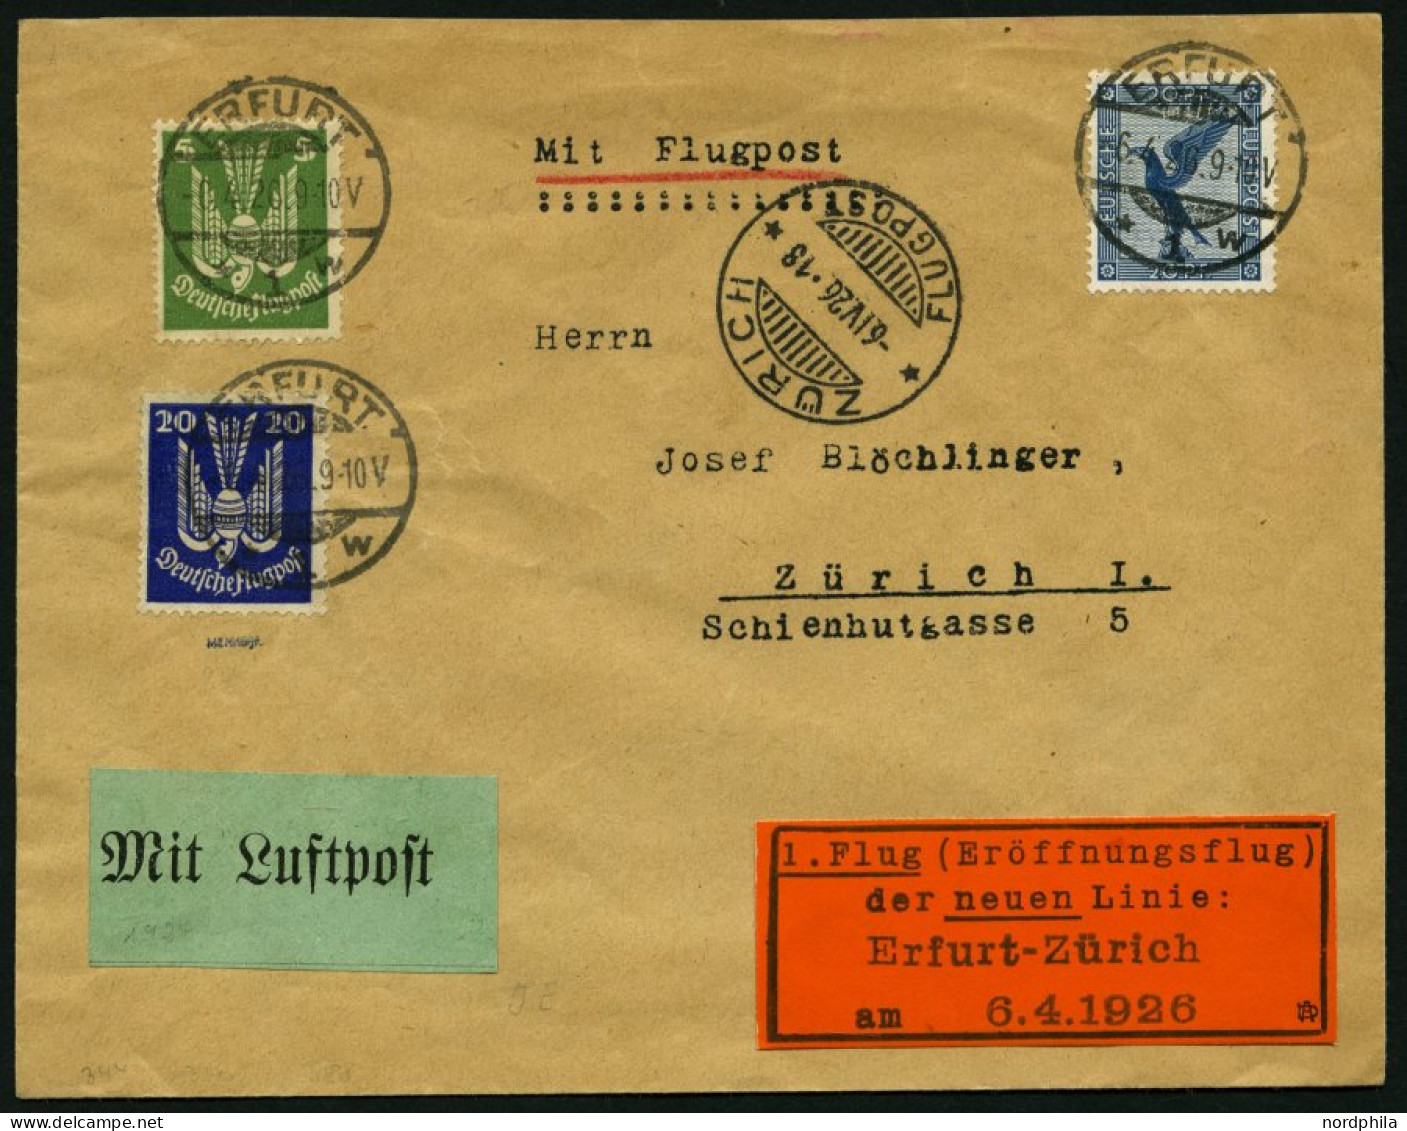 ERST-UND ERÖFFNUNGSFLÜGE 26.7.09 BRIEF, 6.4.1926, Erfurt - Zürich, Prachtbrief, RR! - Zeppelins